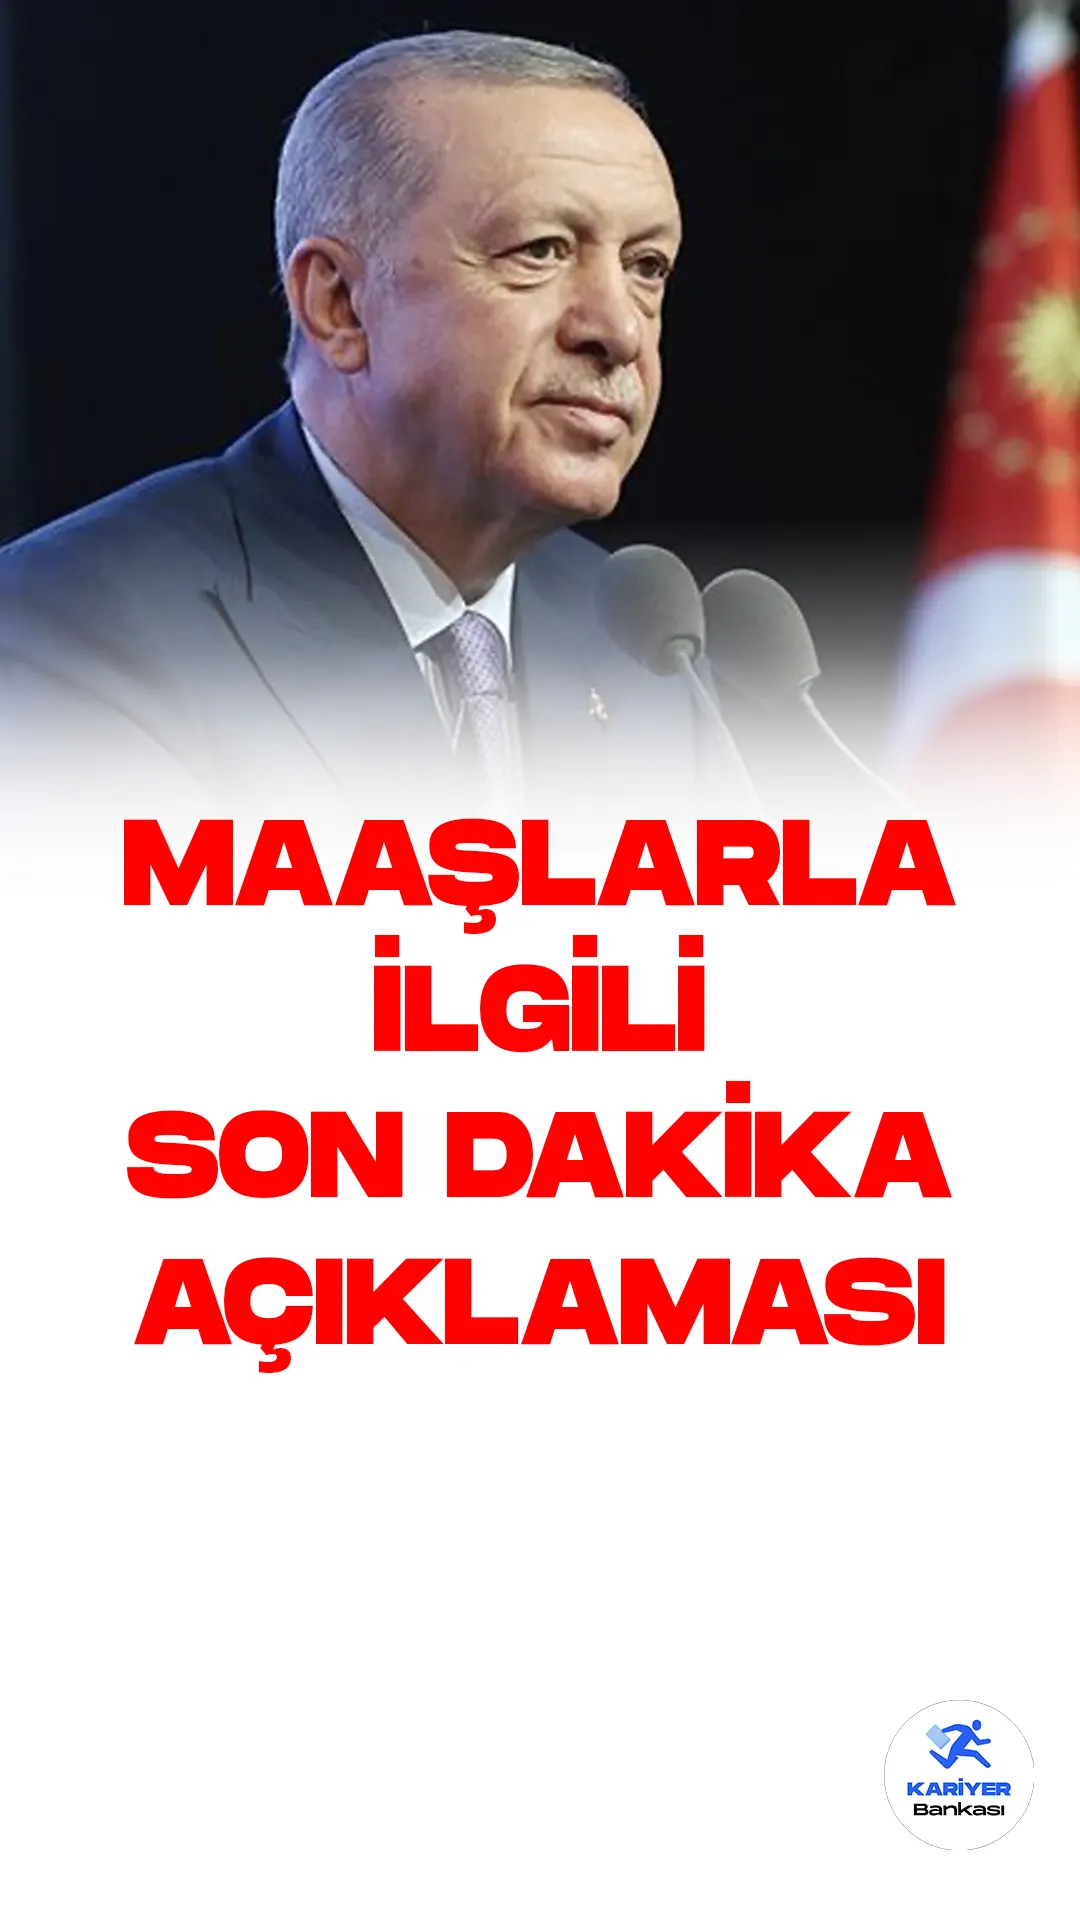 Cumhurbaşkanı Recep Tayyip Erdoğan, maaşlarla ilgili son dakika açıklamalarında bulundu. Cumhurbaşkanı Erdoğan, emeklilerle ilgili çalışmaları tamamladıklarını, en düşük emekli maaşının 7 bin 500 TL olacağını açıkladı.